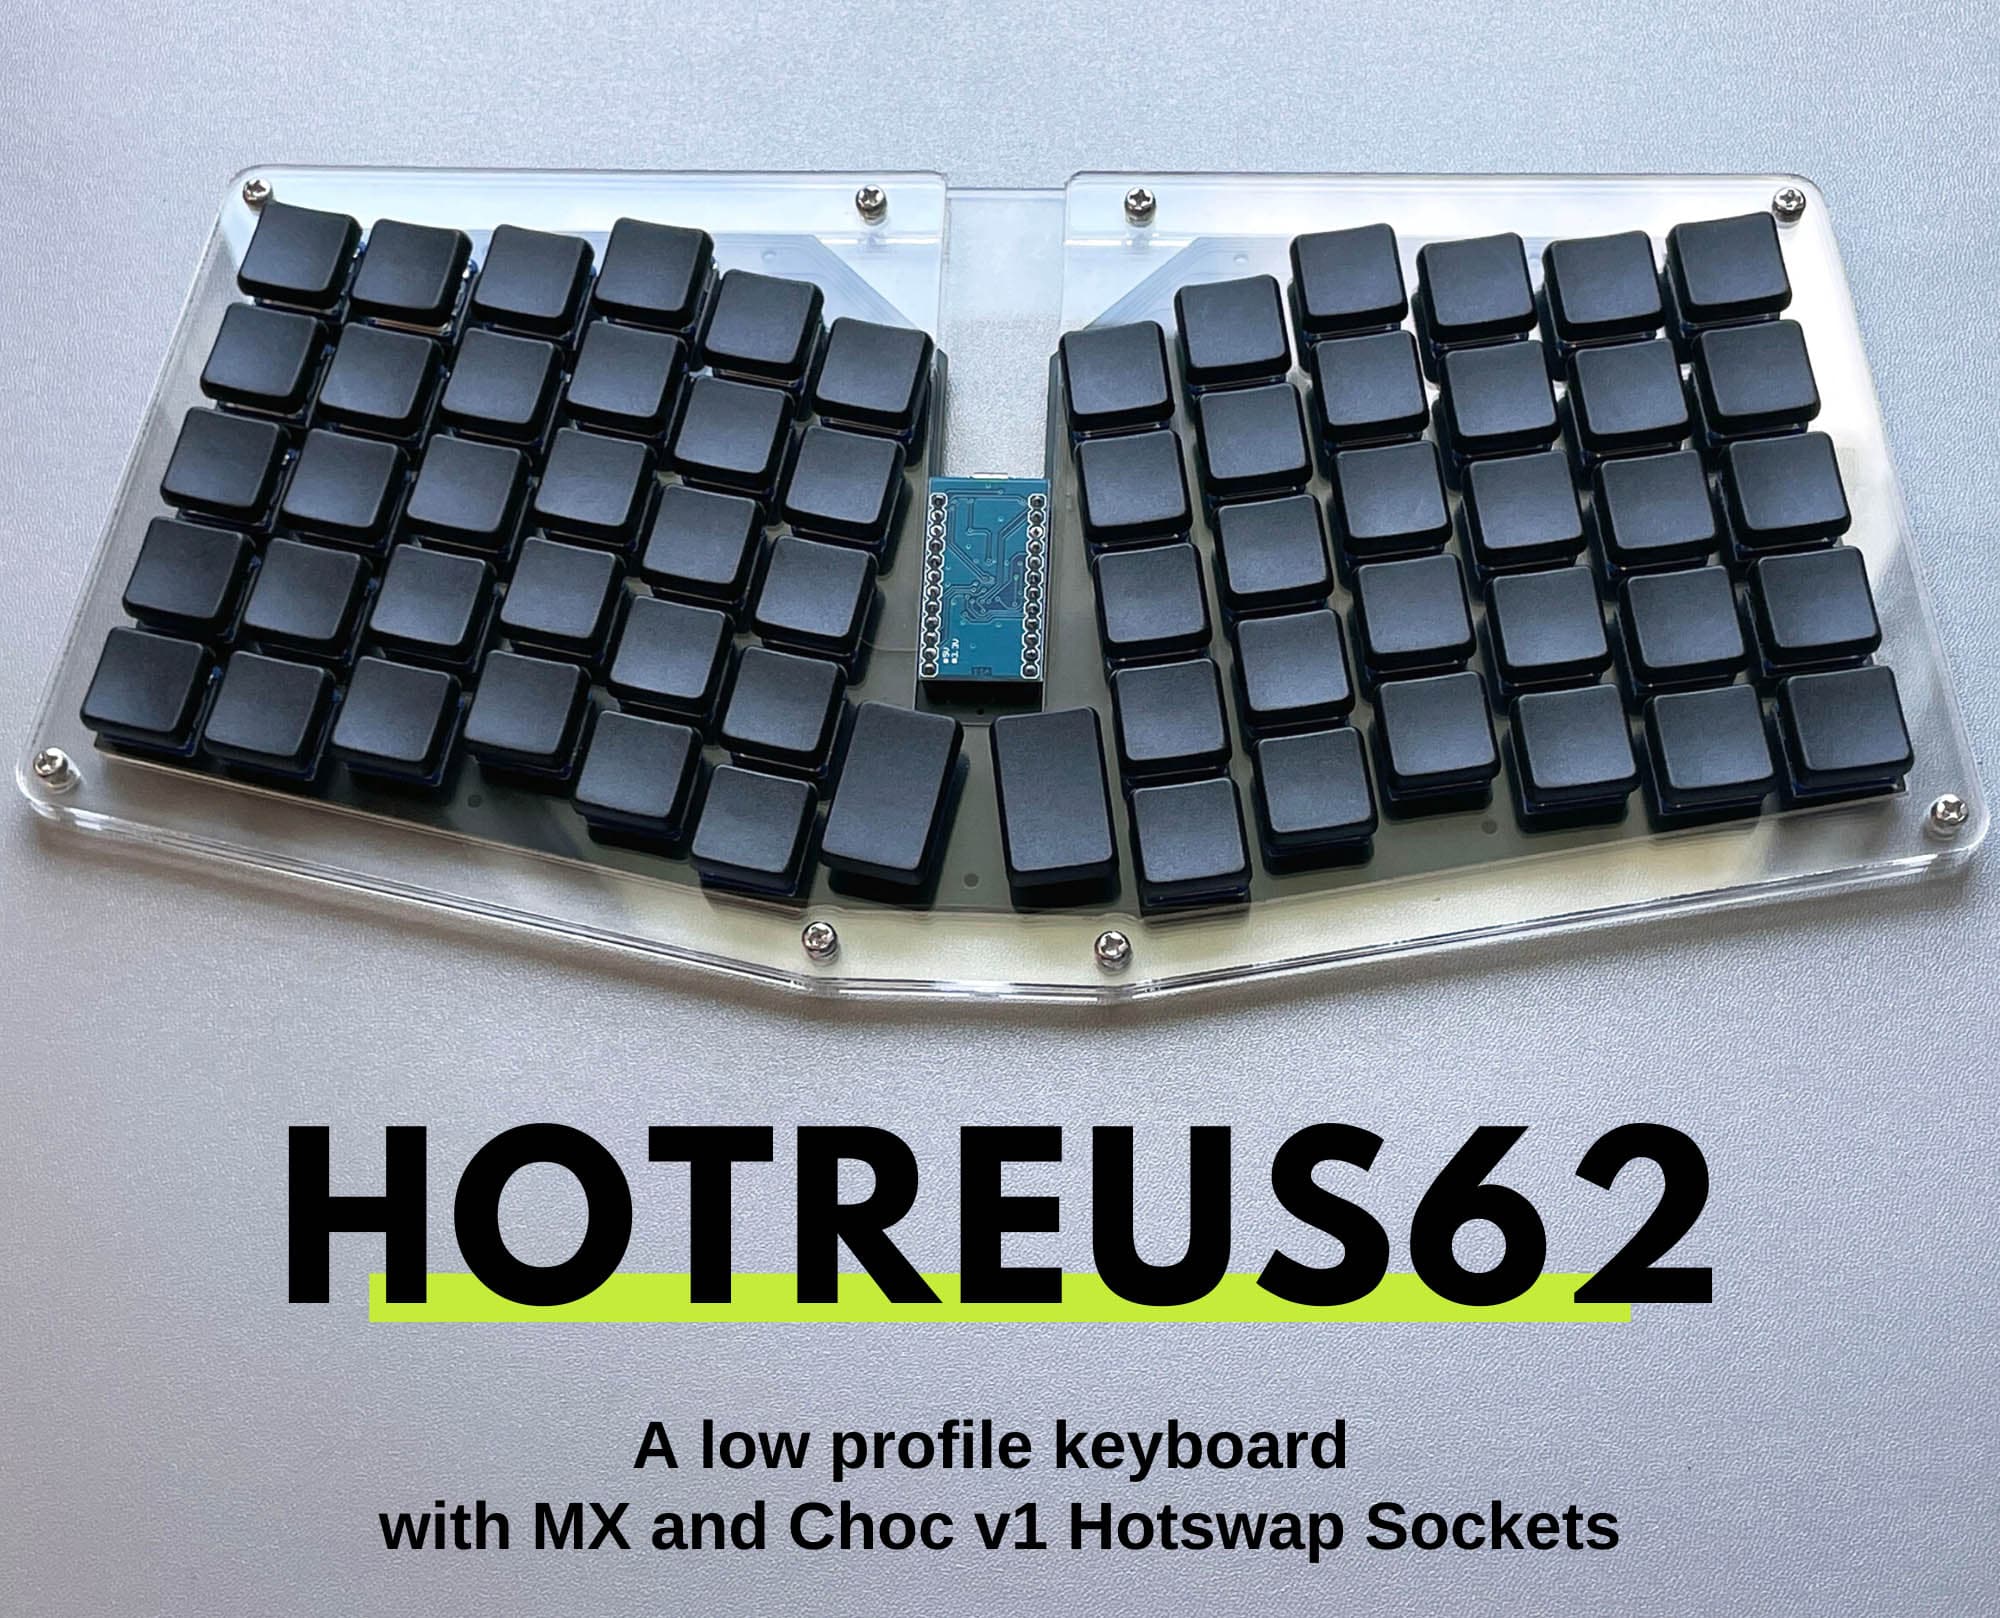 Hotreus62 Keyboard